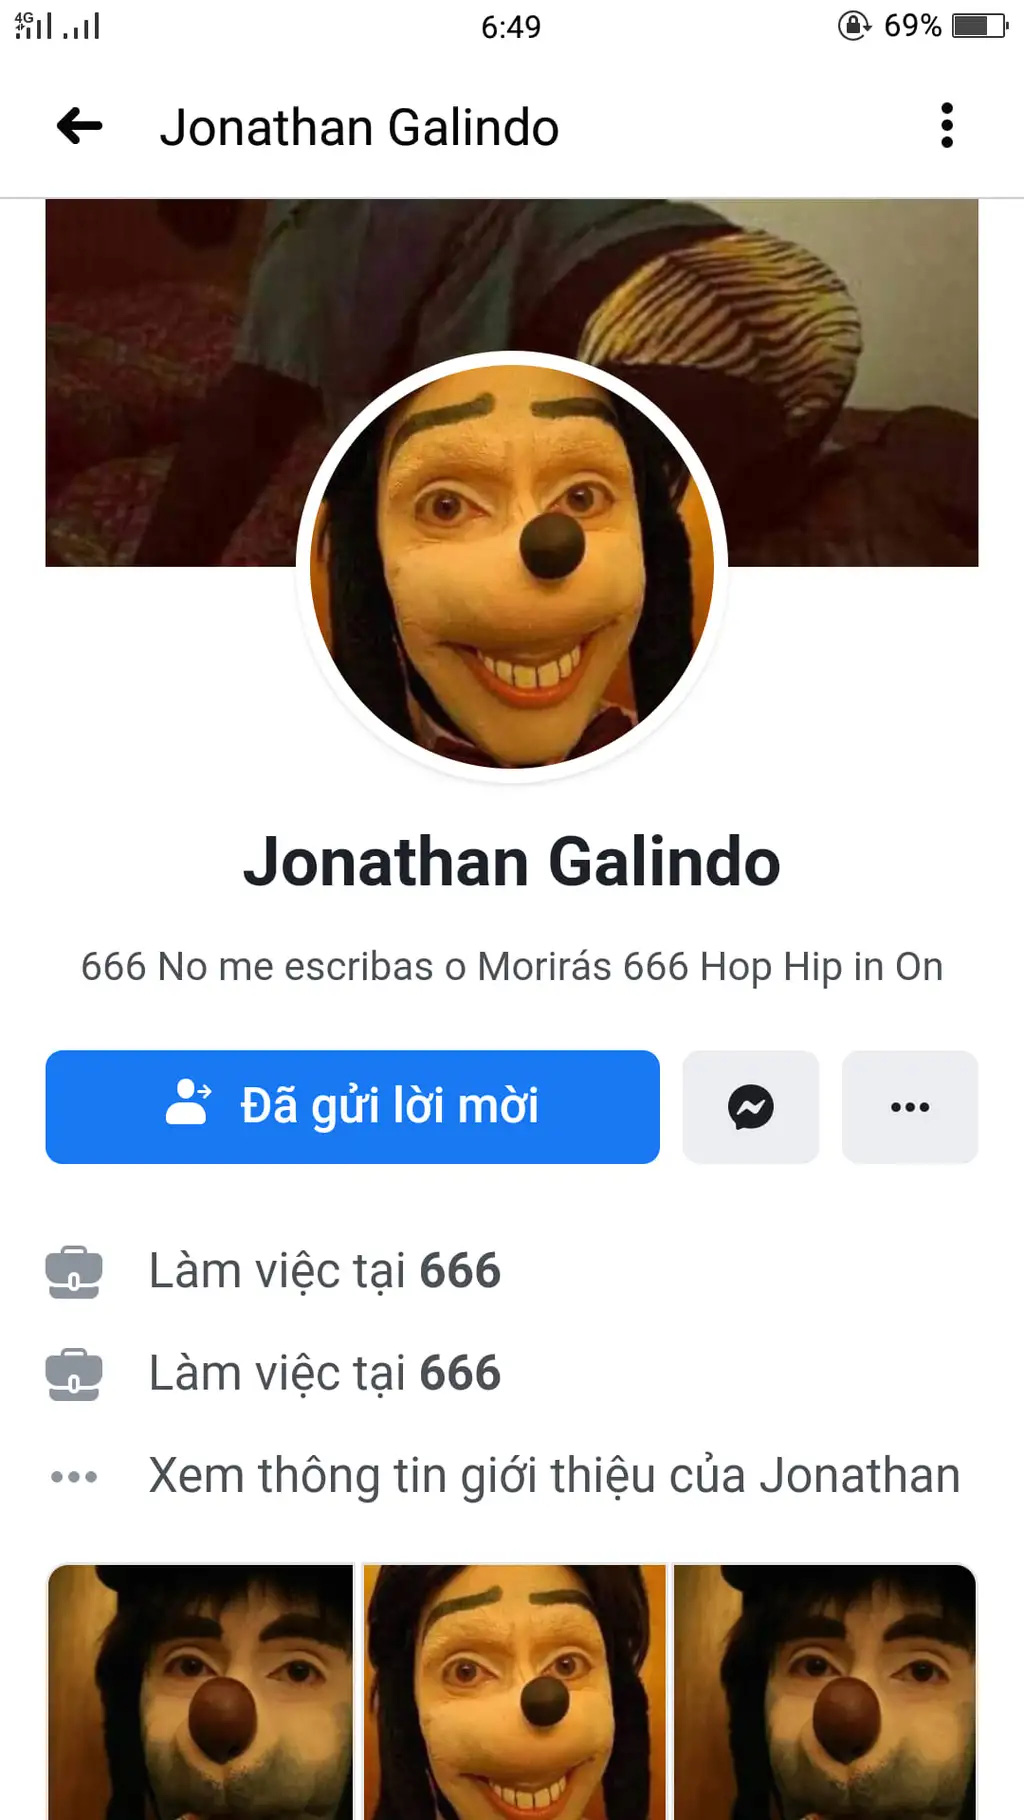 Ngập tràn meme và spam tài khoản chỉ trong 24h, netizen Việt tuyên bố:  Jonathan Galindo rất đáng sợ, nhưng rất tiếc là không phải ở Đông Lào